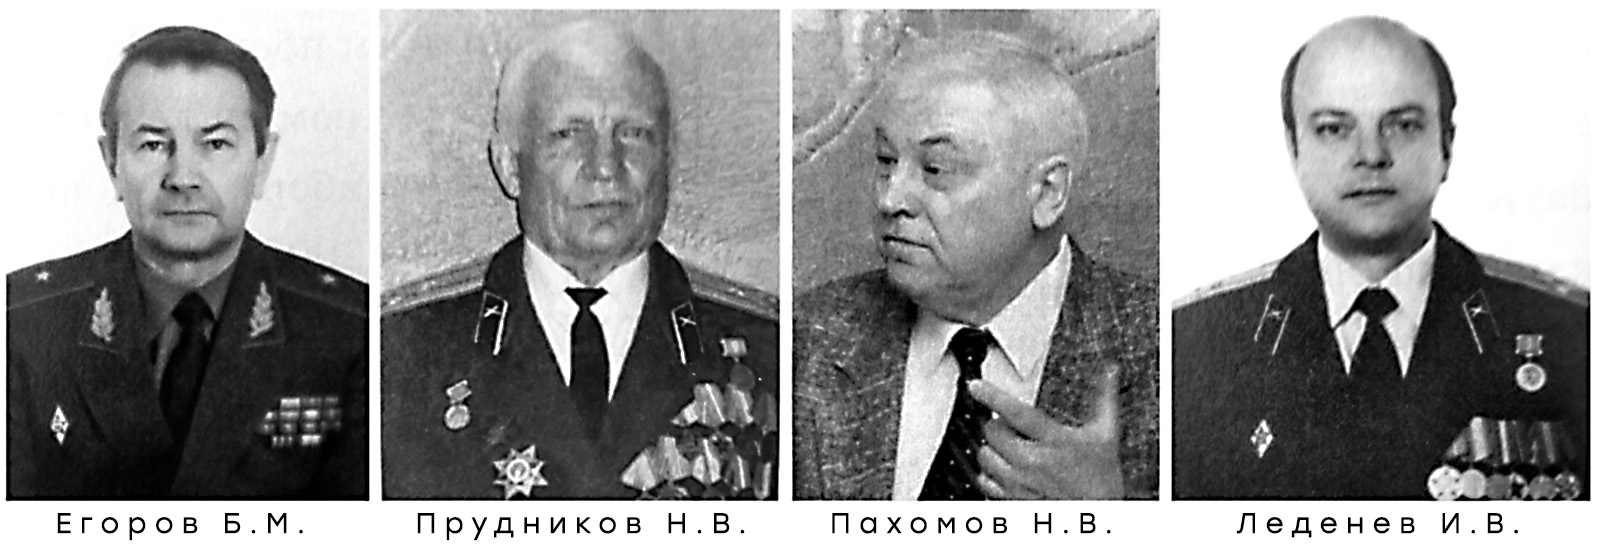 Егоров Б.М., Прудников Н.В., Пахомов Н.В., Леденев И.В.